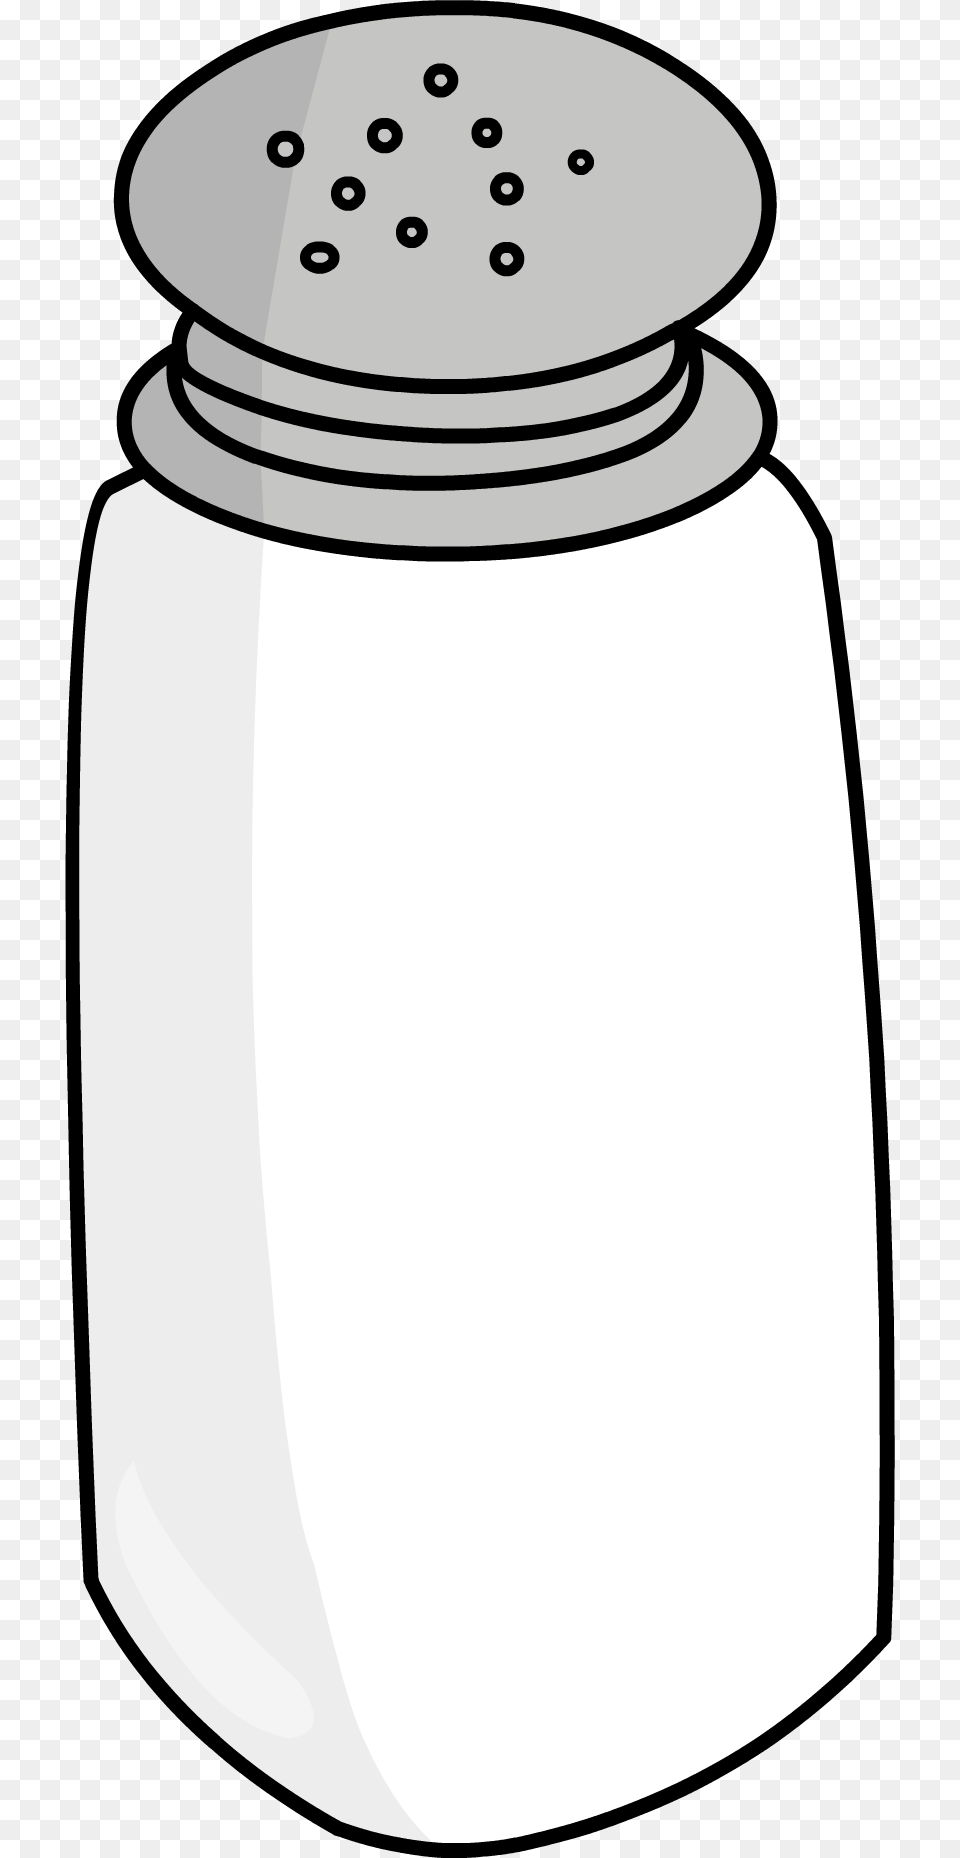 Image, Jar, Bottle, Shaker Free Png Download